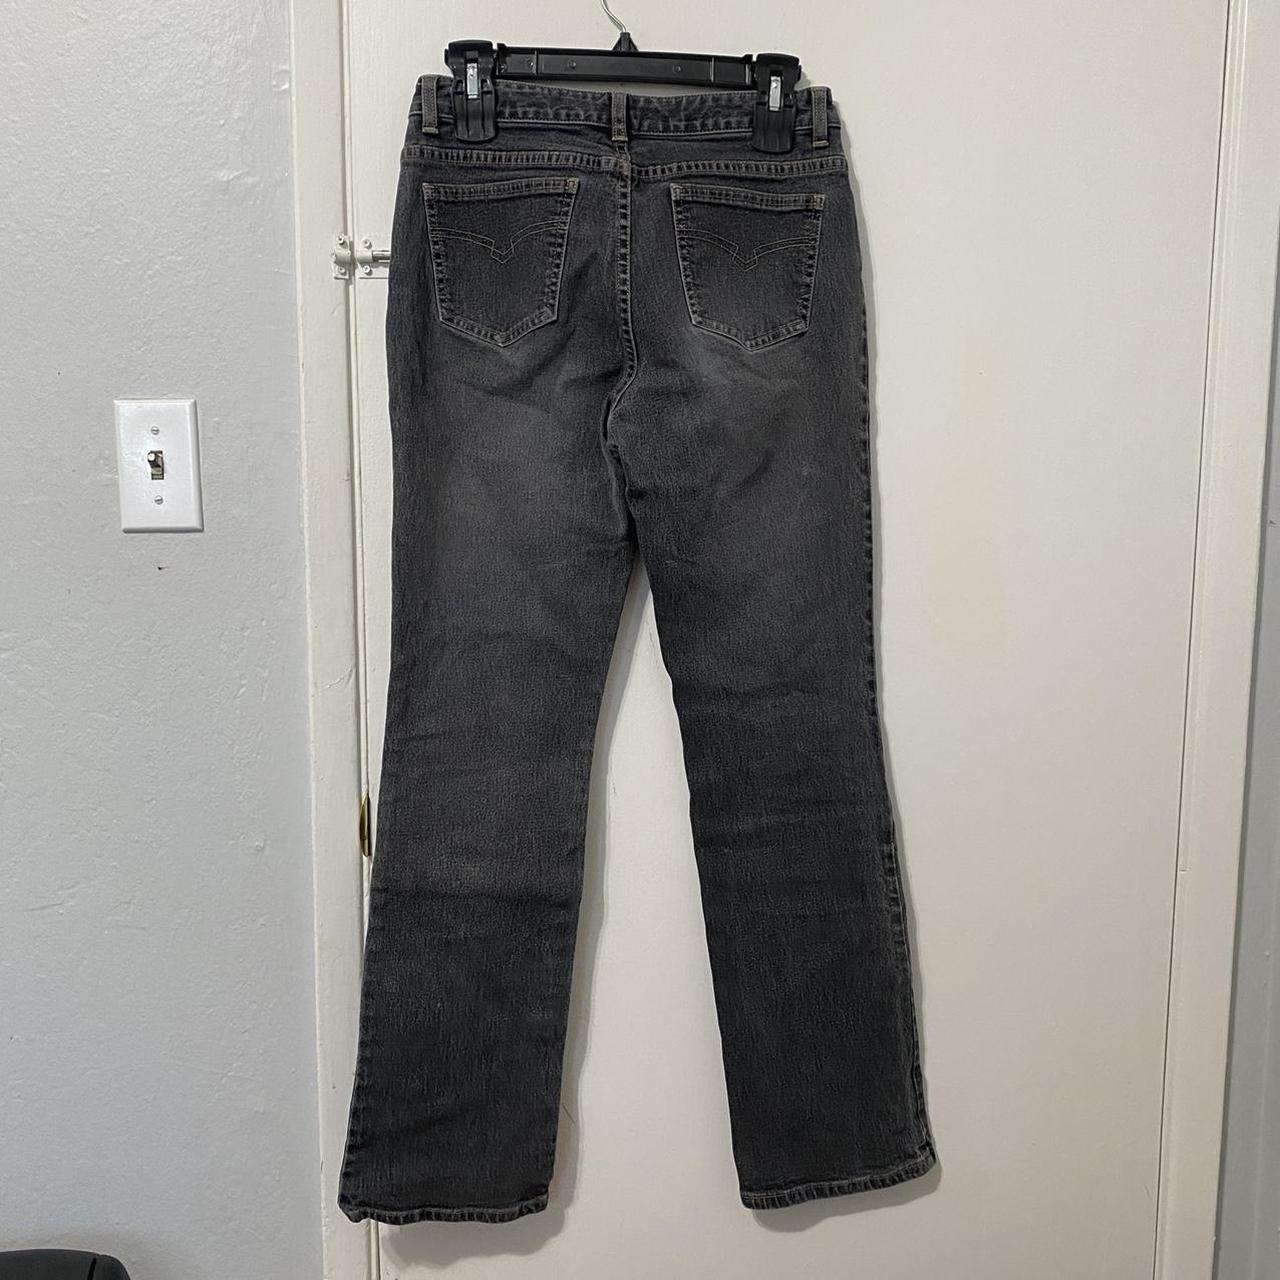 Product Image 4 - Halogen women jean pants size